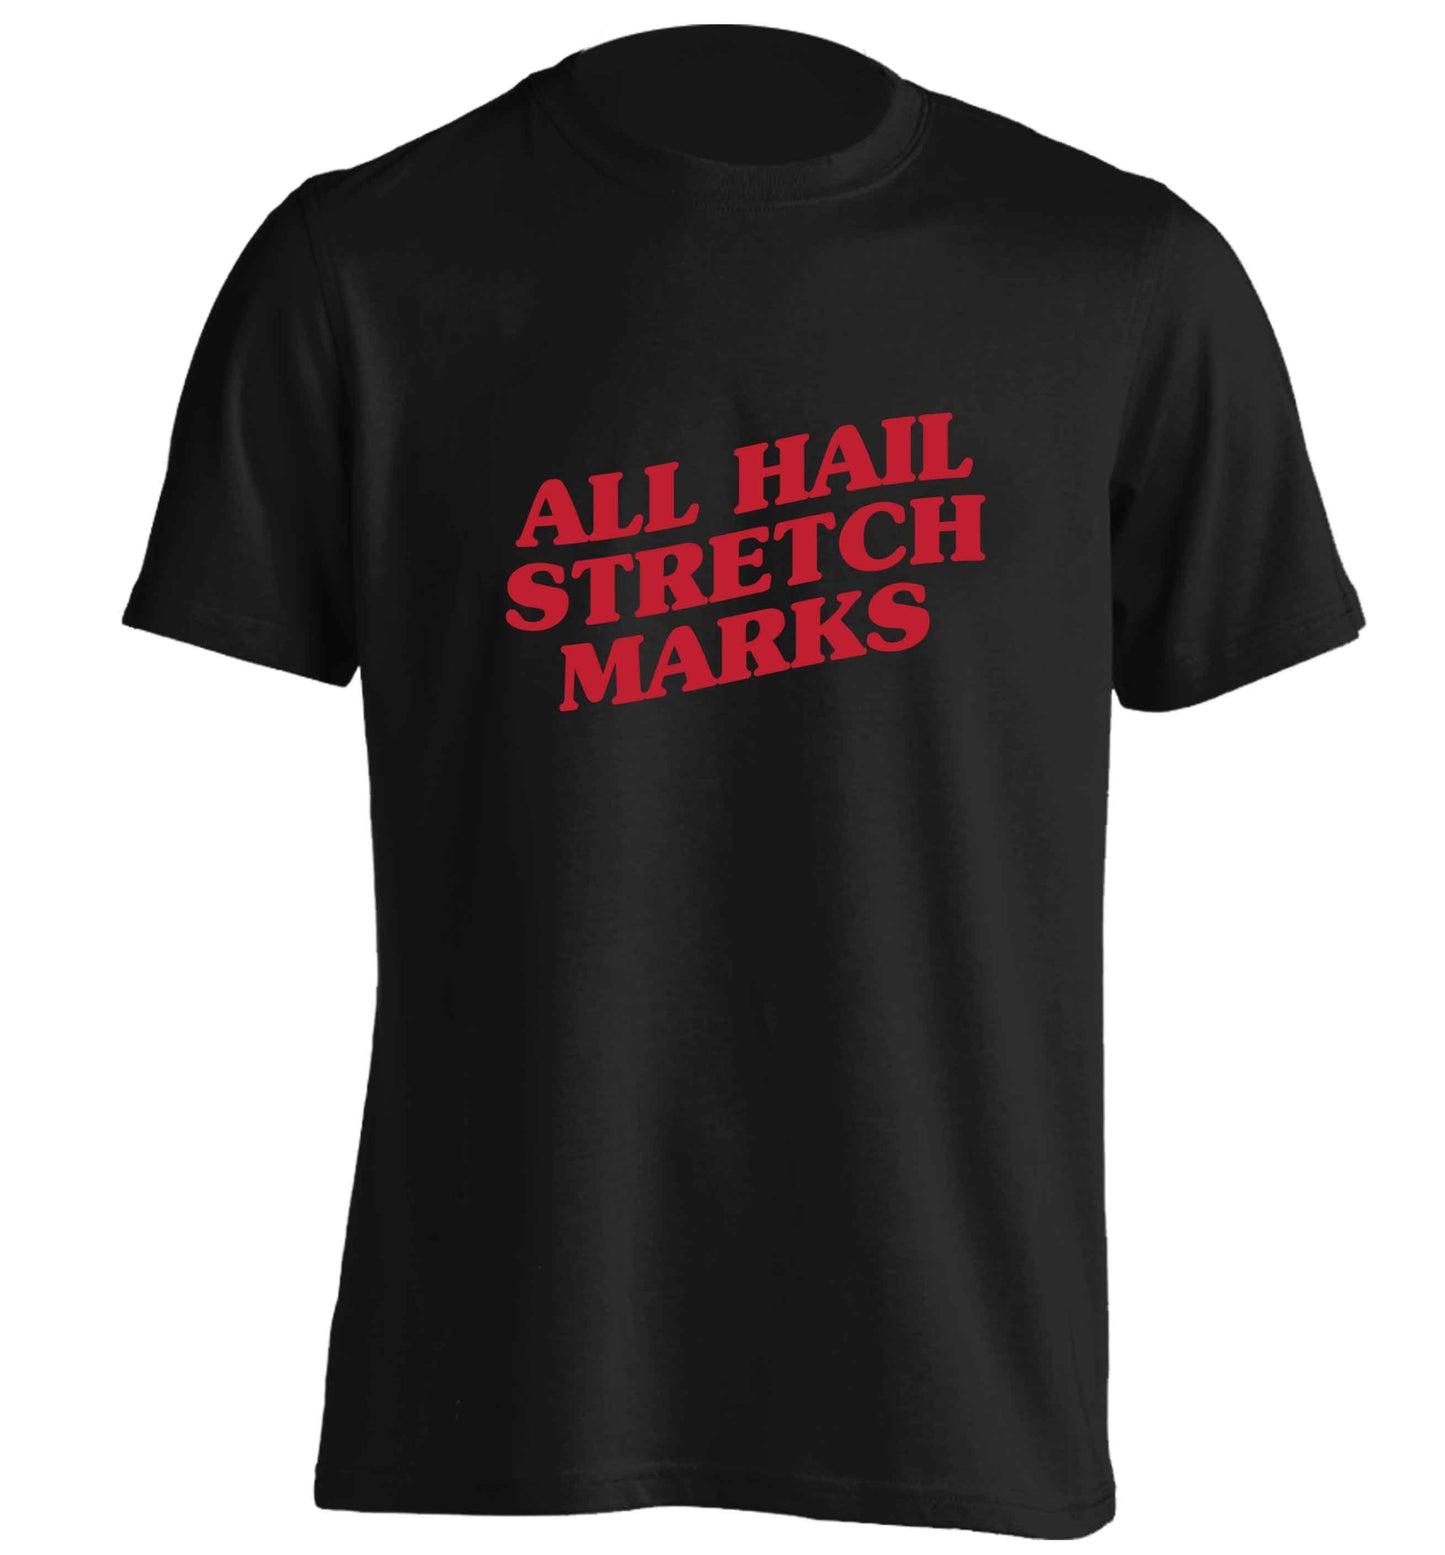 All hail stretch marks adults unisex black Tshirt 2XL